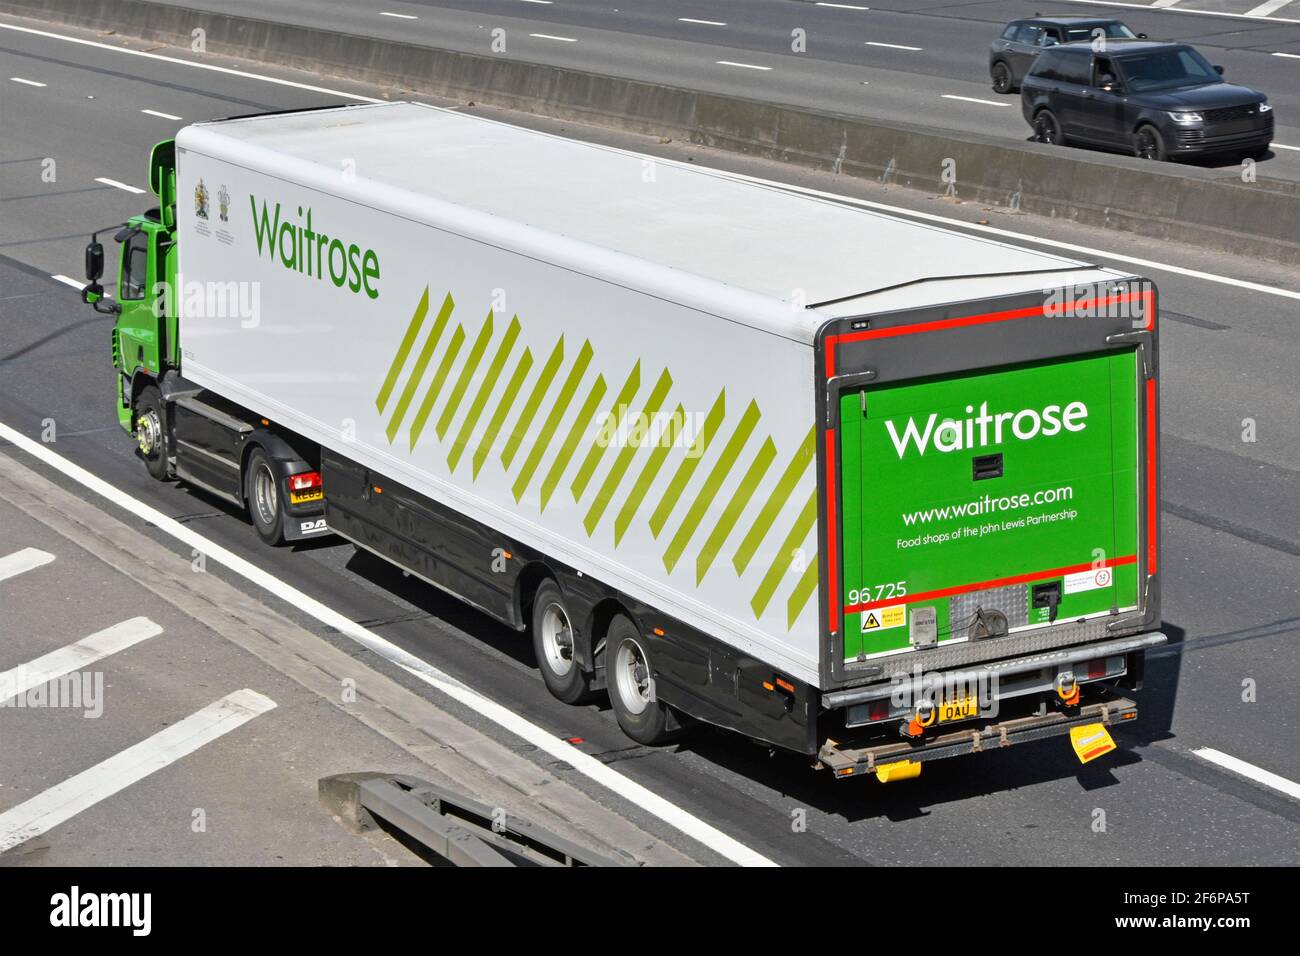 Seiten- und Rückansicht von oben Waitrose Retail Online-Geschäft Supermarkt Lebensmittel Supply Chain Store Delivery LKW & Anhänger Fahren Sie auf der britischen Autobahn Stockfoto